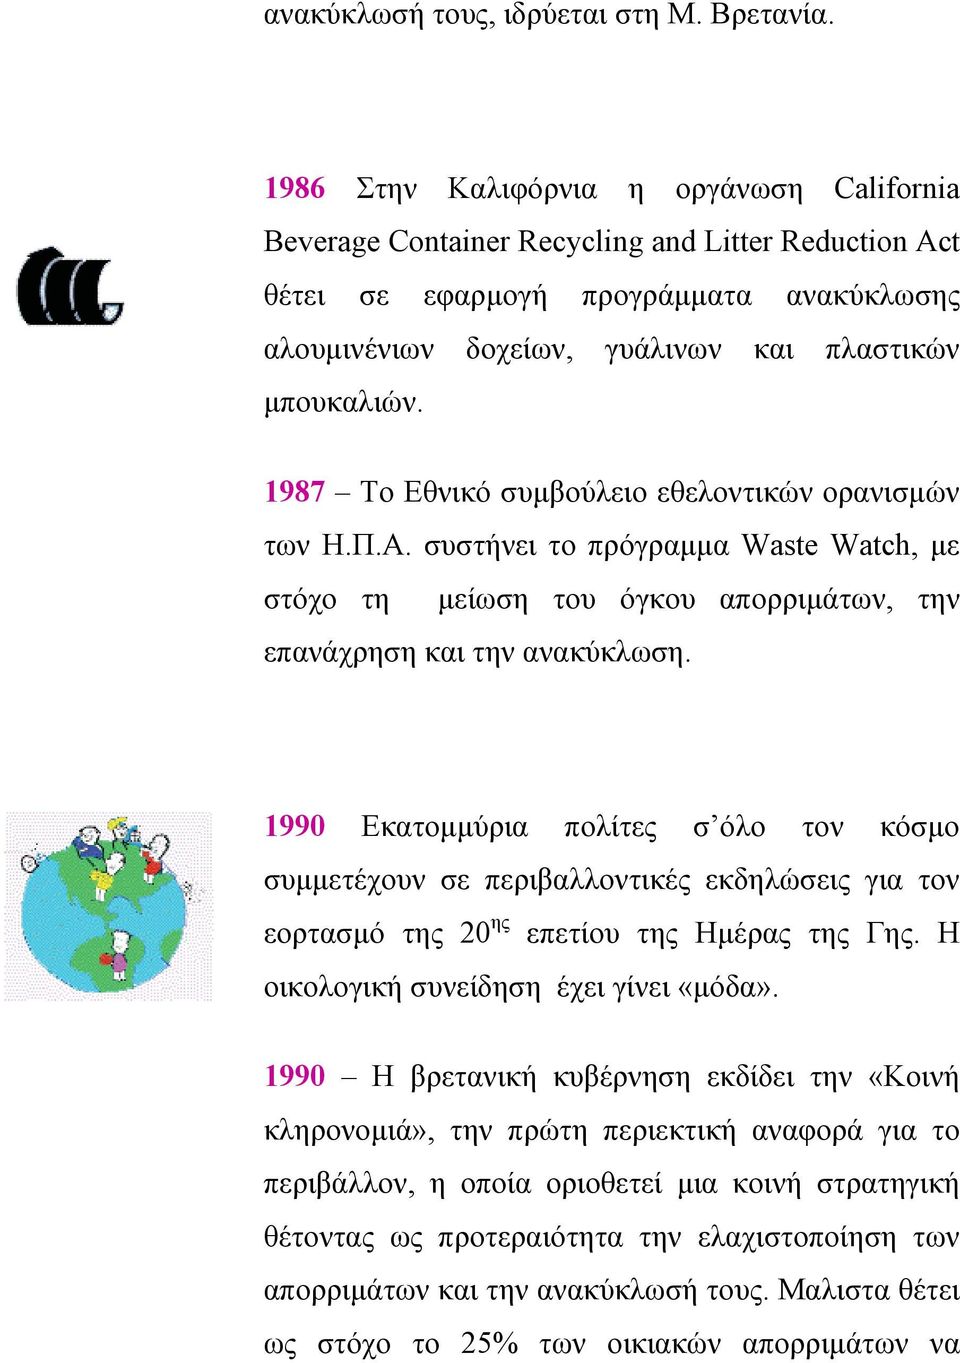 1987 Το Εθνικό συµβούλειο εθελοντικών ορανισµών των Η.Π.Α. συστήνει το πρόγραµµα Waste Watch, µε στόχο τη µείωση του όγκου απορριµάτων, την επανάχρηση και την ανακύκλωση.